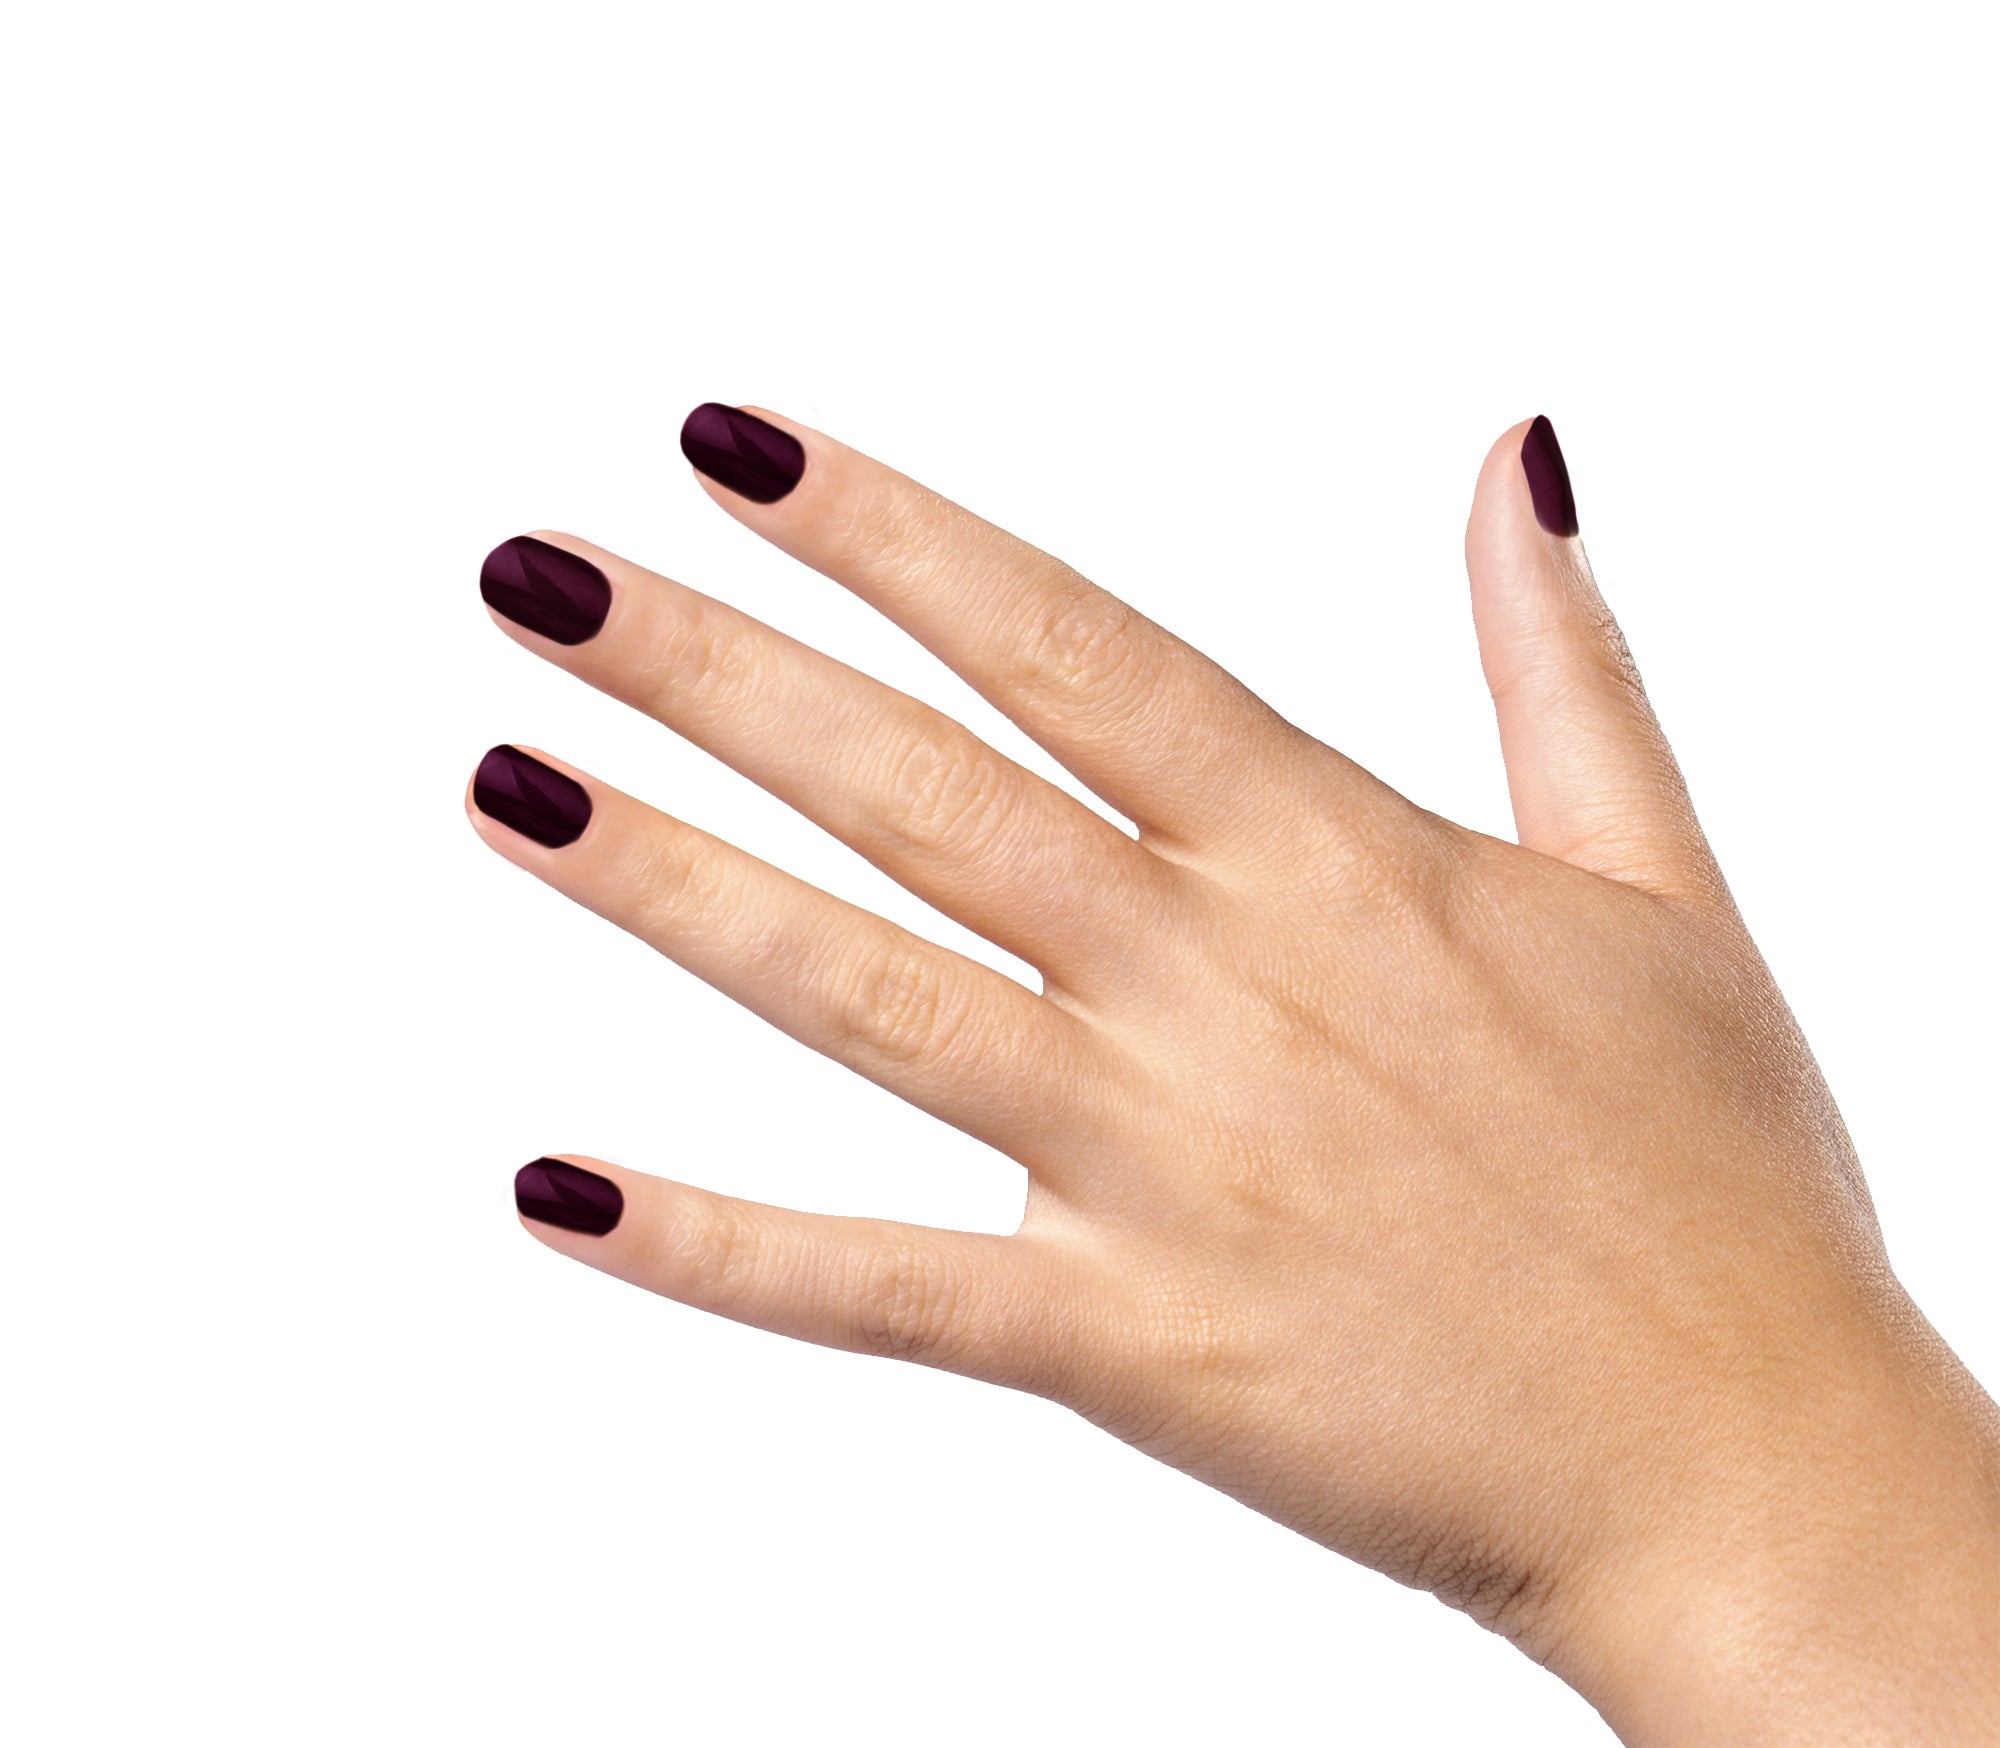 Nail Dasha's - #GoddessofNails Dark burgundy nails 🖤 | Facebook